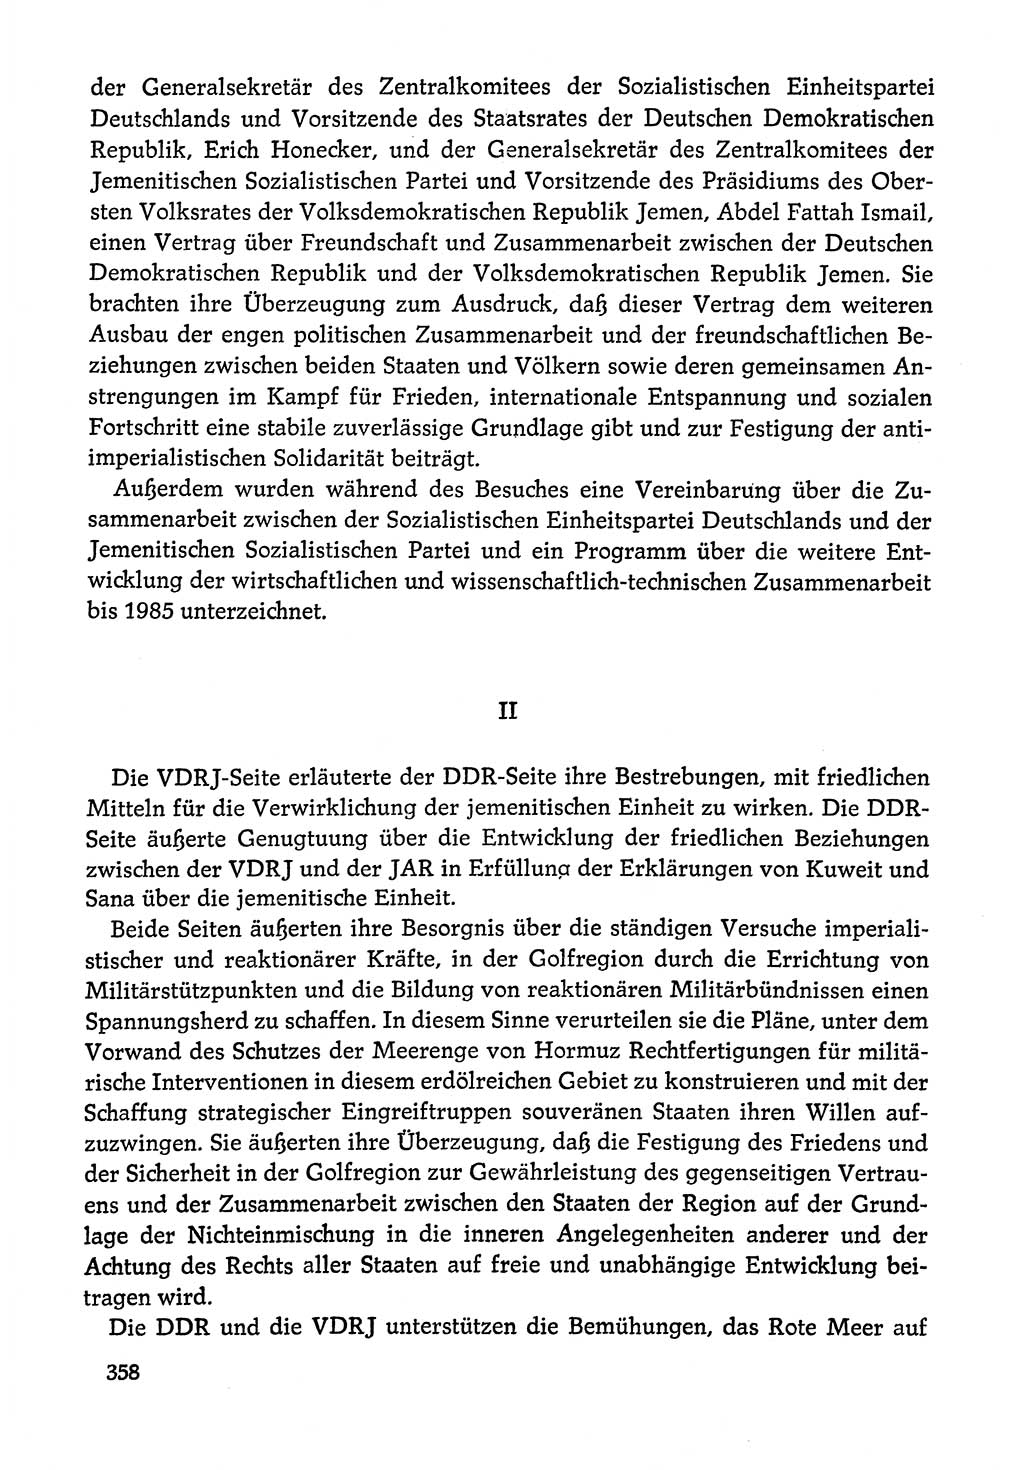 Dokumente der Sozialistischen Einheitspartei Deutschlands (SED) [Deutsche Demokratische Republik (DDR)] 1978-1979, Seite 358 (Dok. SED DDR 1978-1979, S. 358)